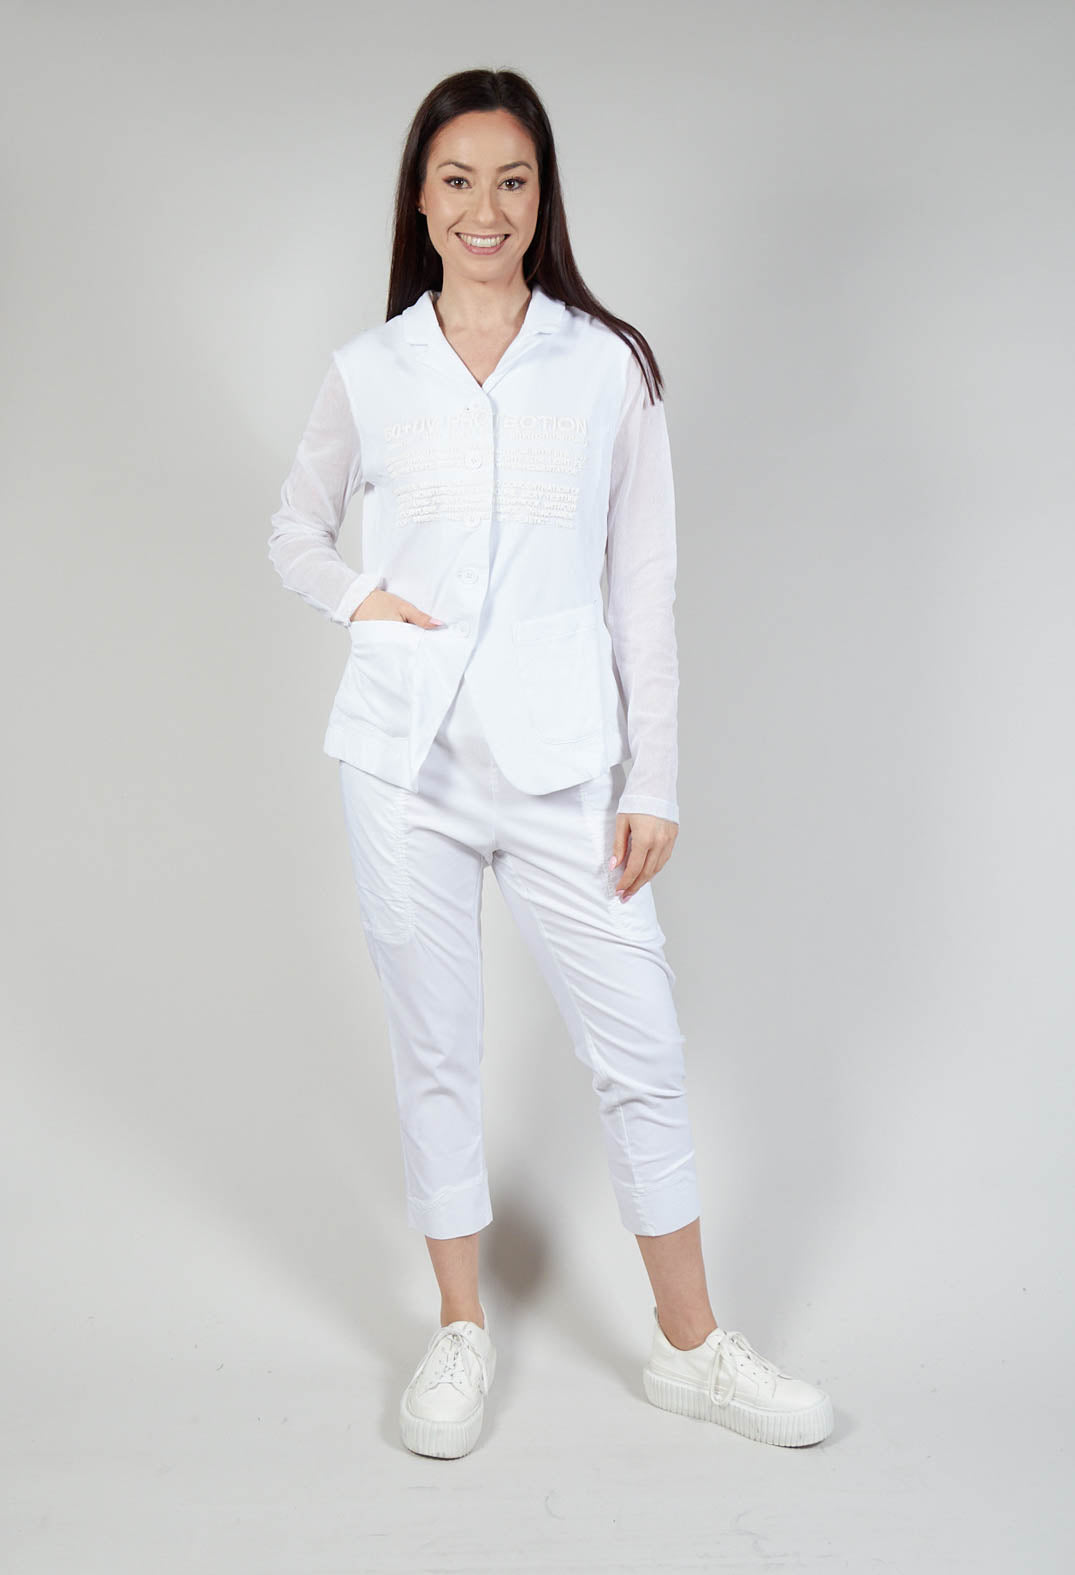 Sheer Sleeve Jacket in White Print